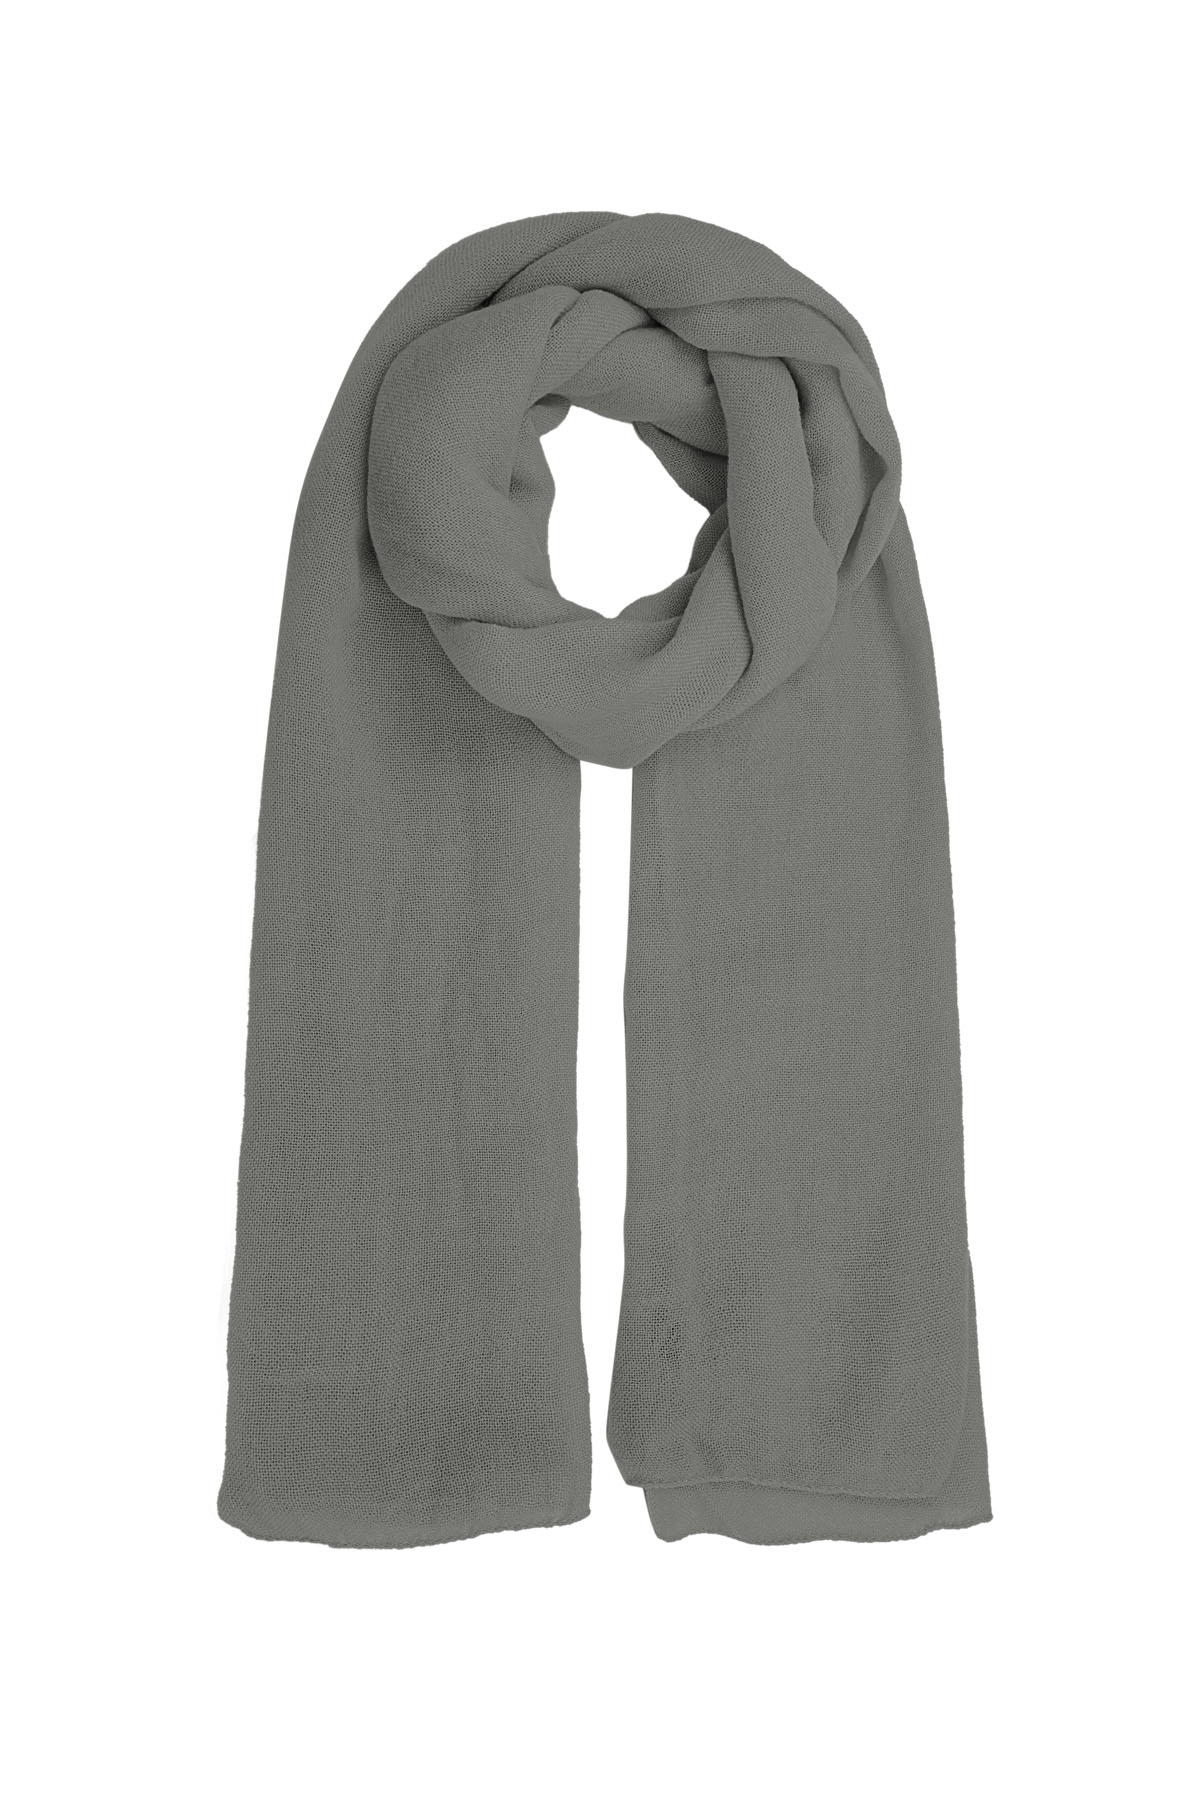 Sjaal effen kleur - grijs 